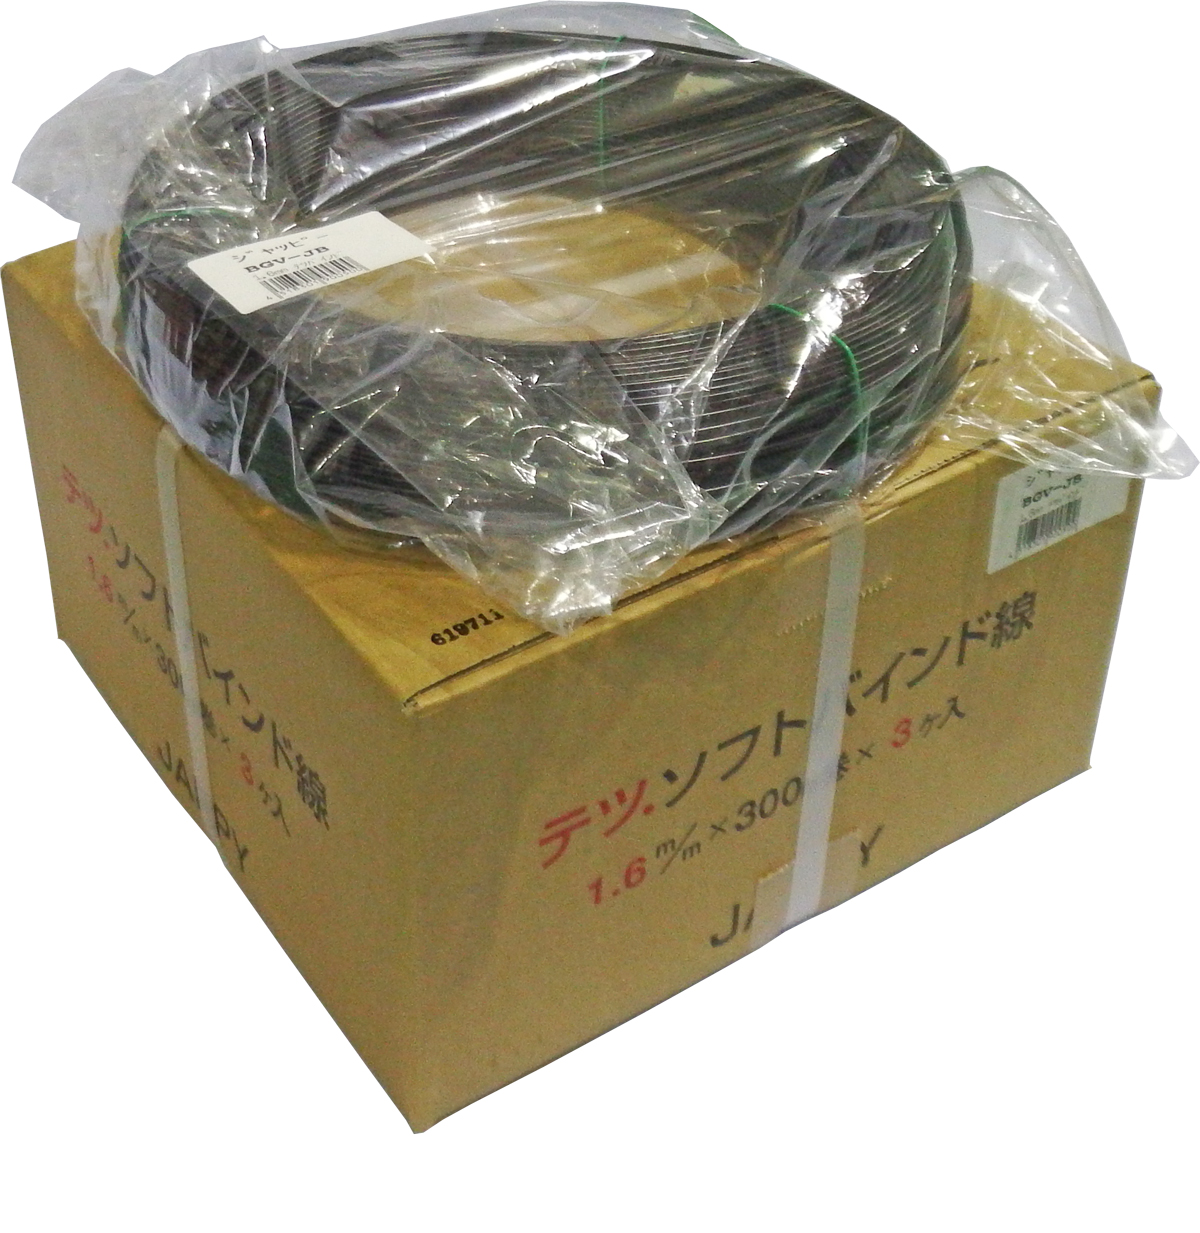 ナショナル JAPPY 鉄ソフトバインド線 1,2mm 3個 Oprk0-m41304727296 エアコン